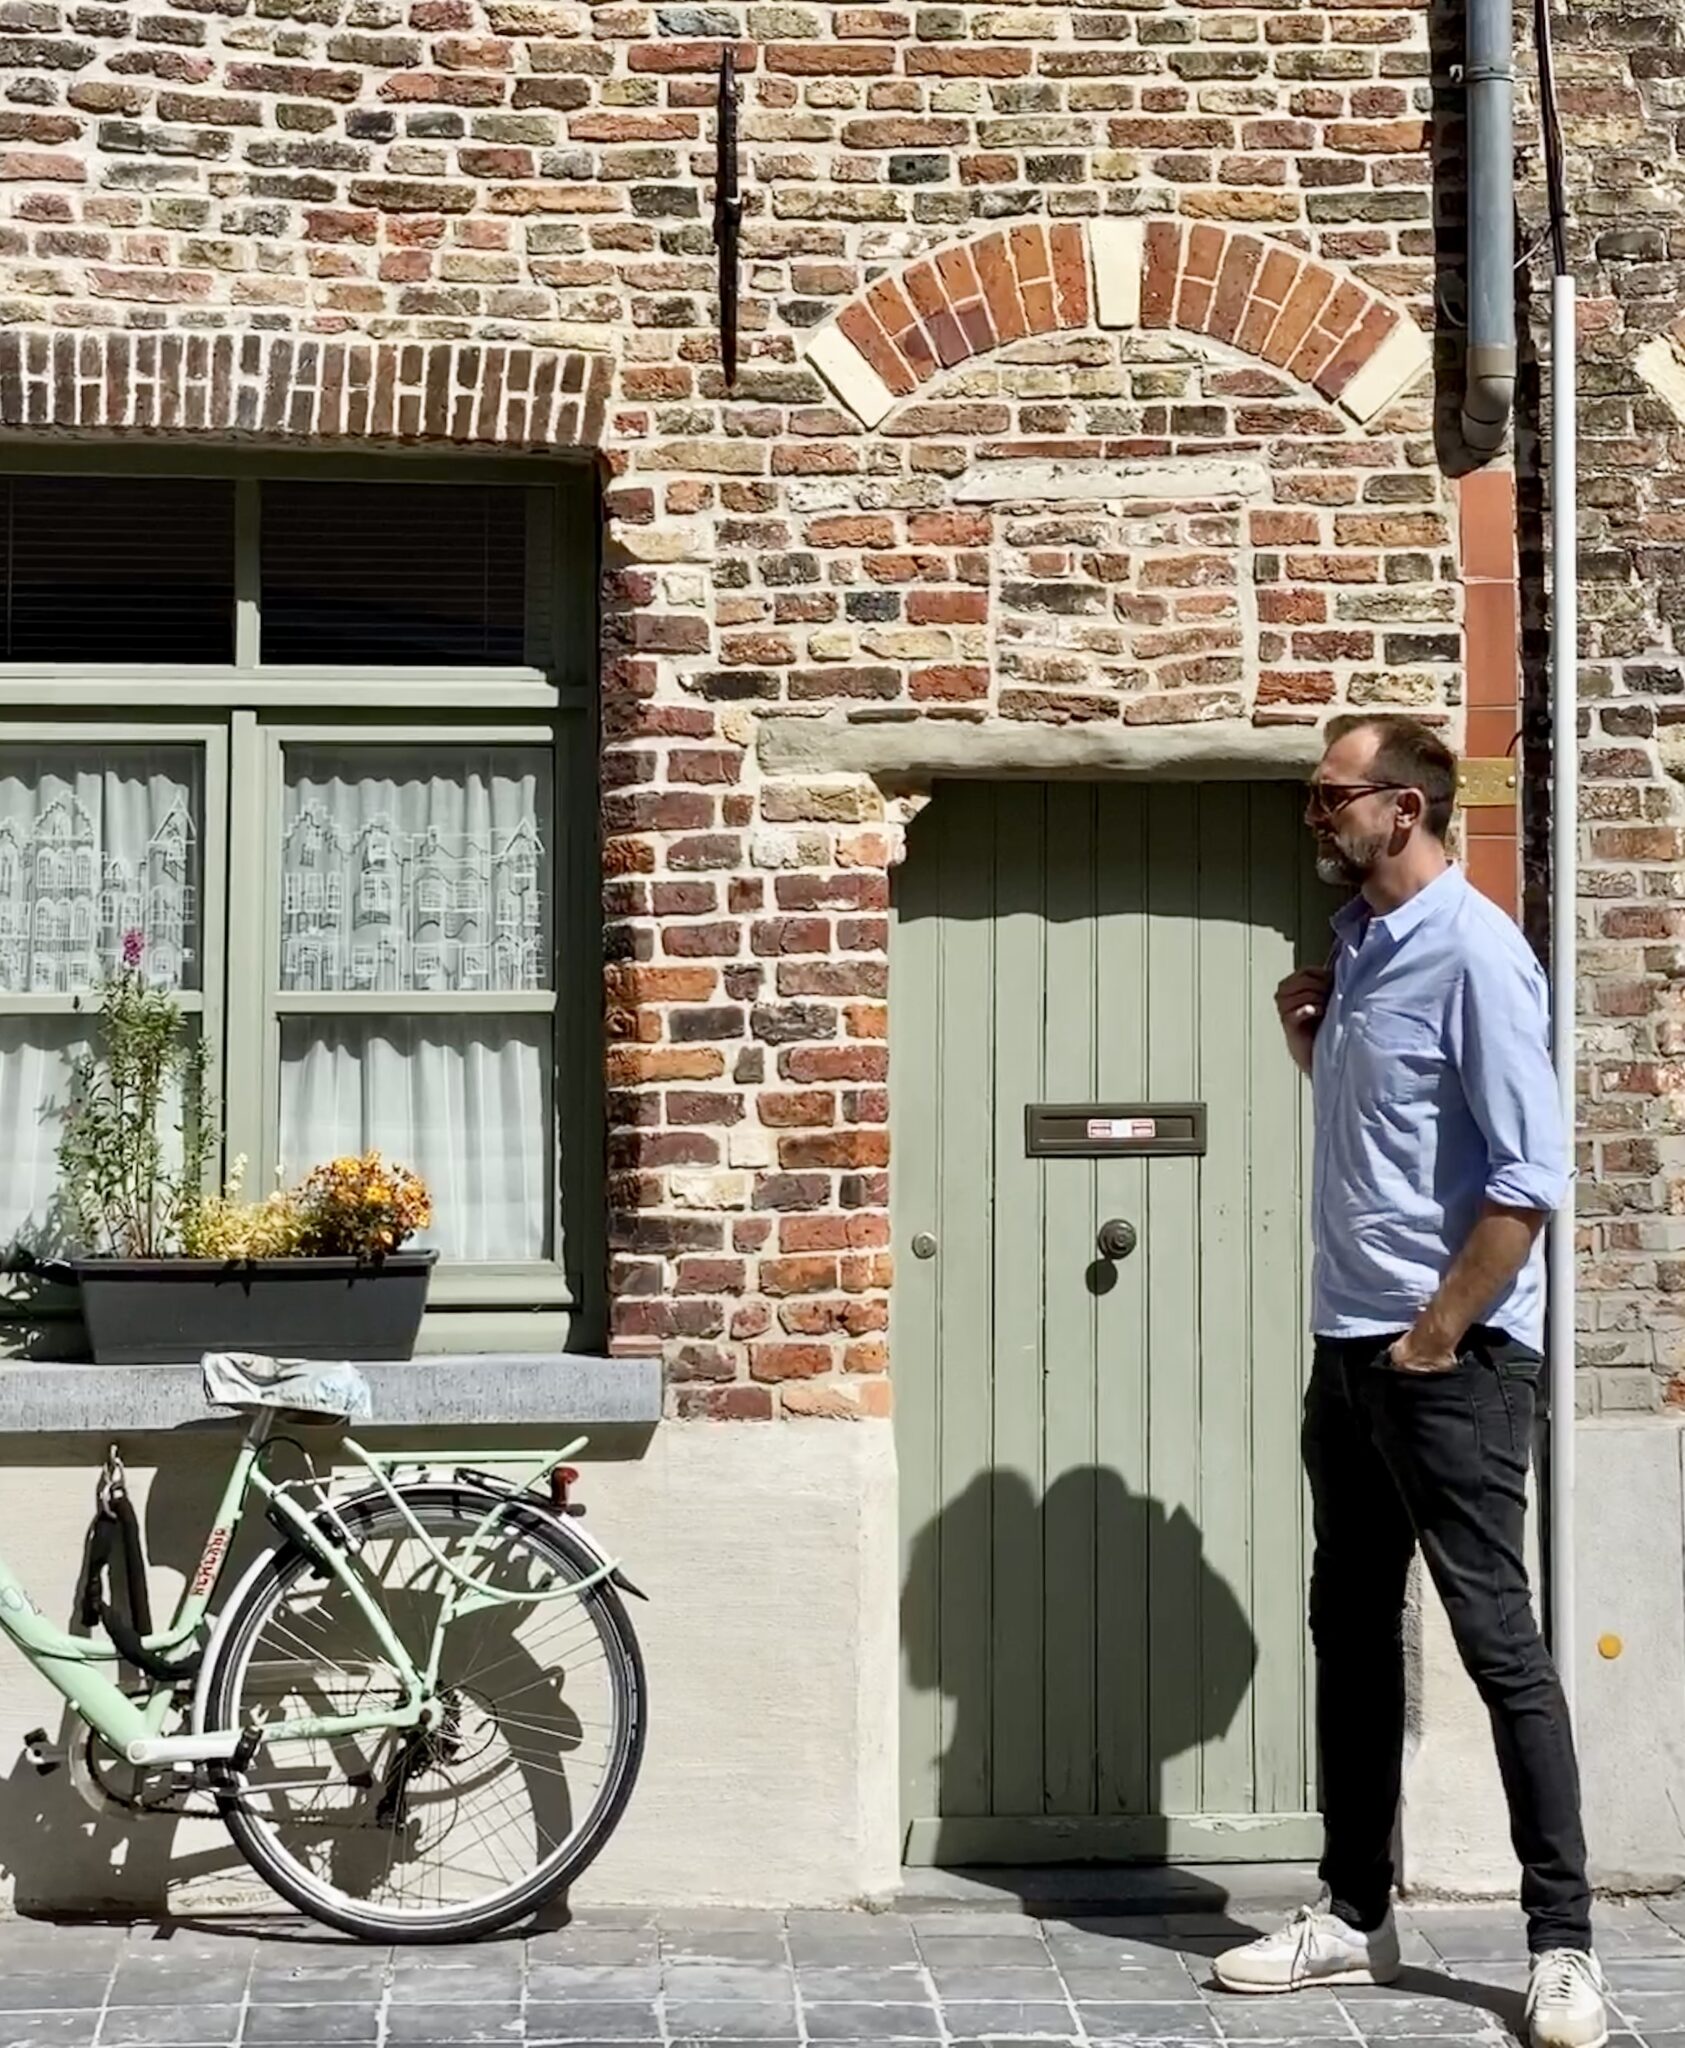 Michael vor hübscher Häuserfront aus roten Backsteinen. Die Farbe der Tür passt zur Farbe des Fahrrads, das an der Hauswand lehnt: mintgrün